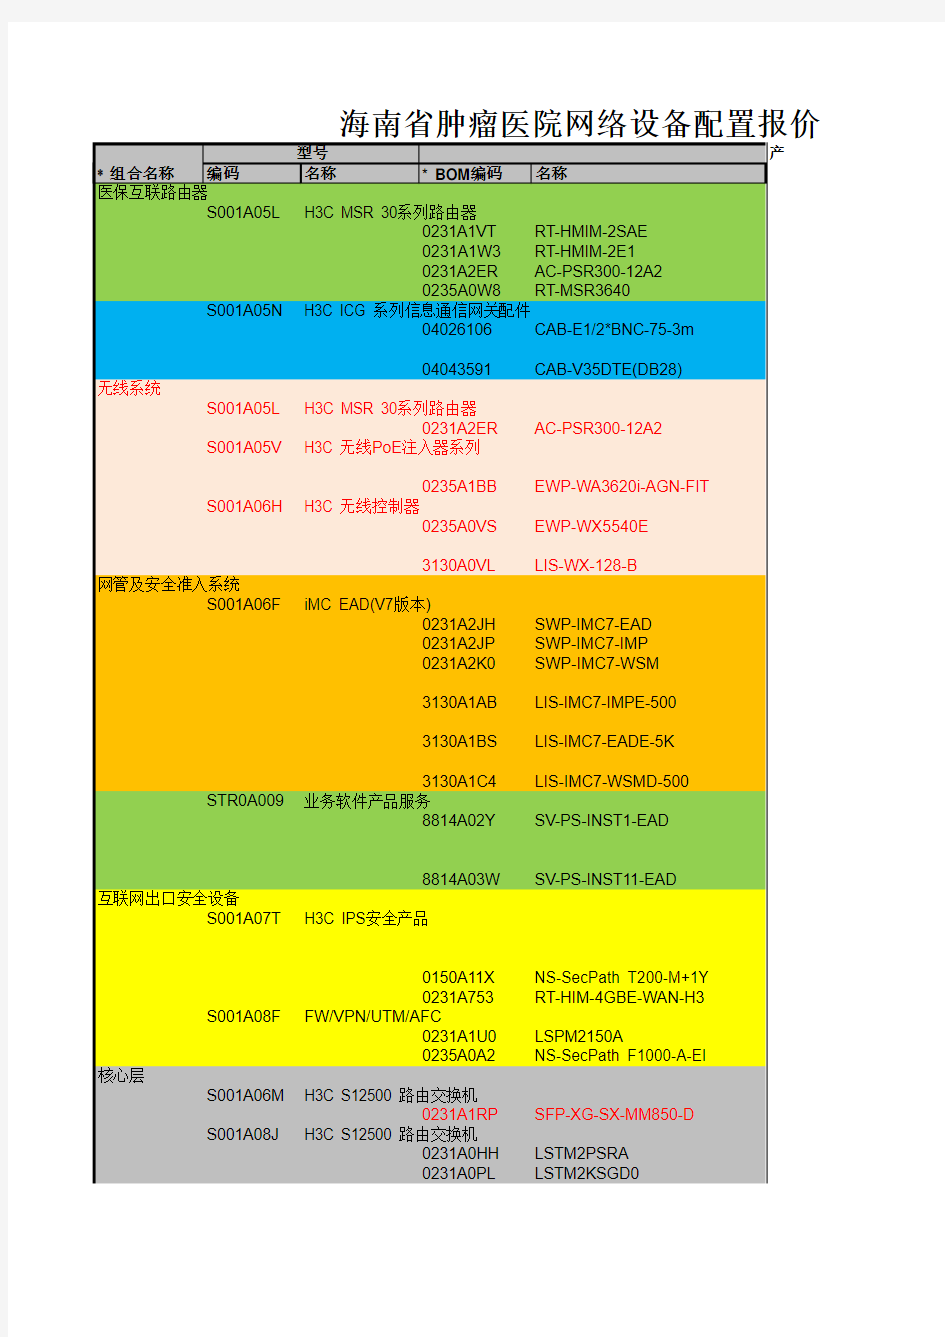 海南省肿瘤医院网络设备配置报价清单(项目部已审)20150512